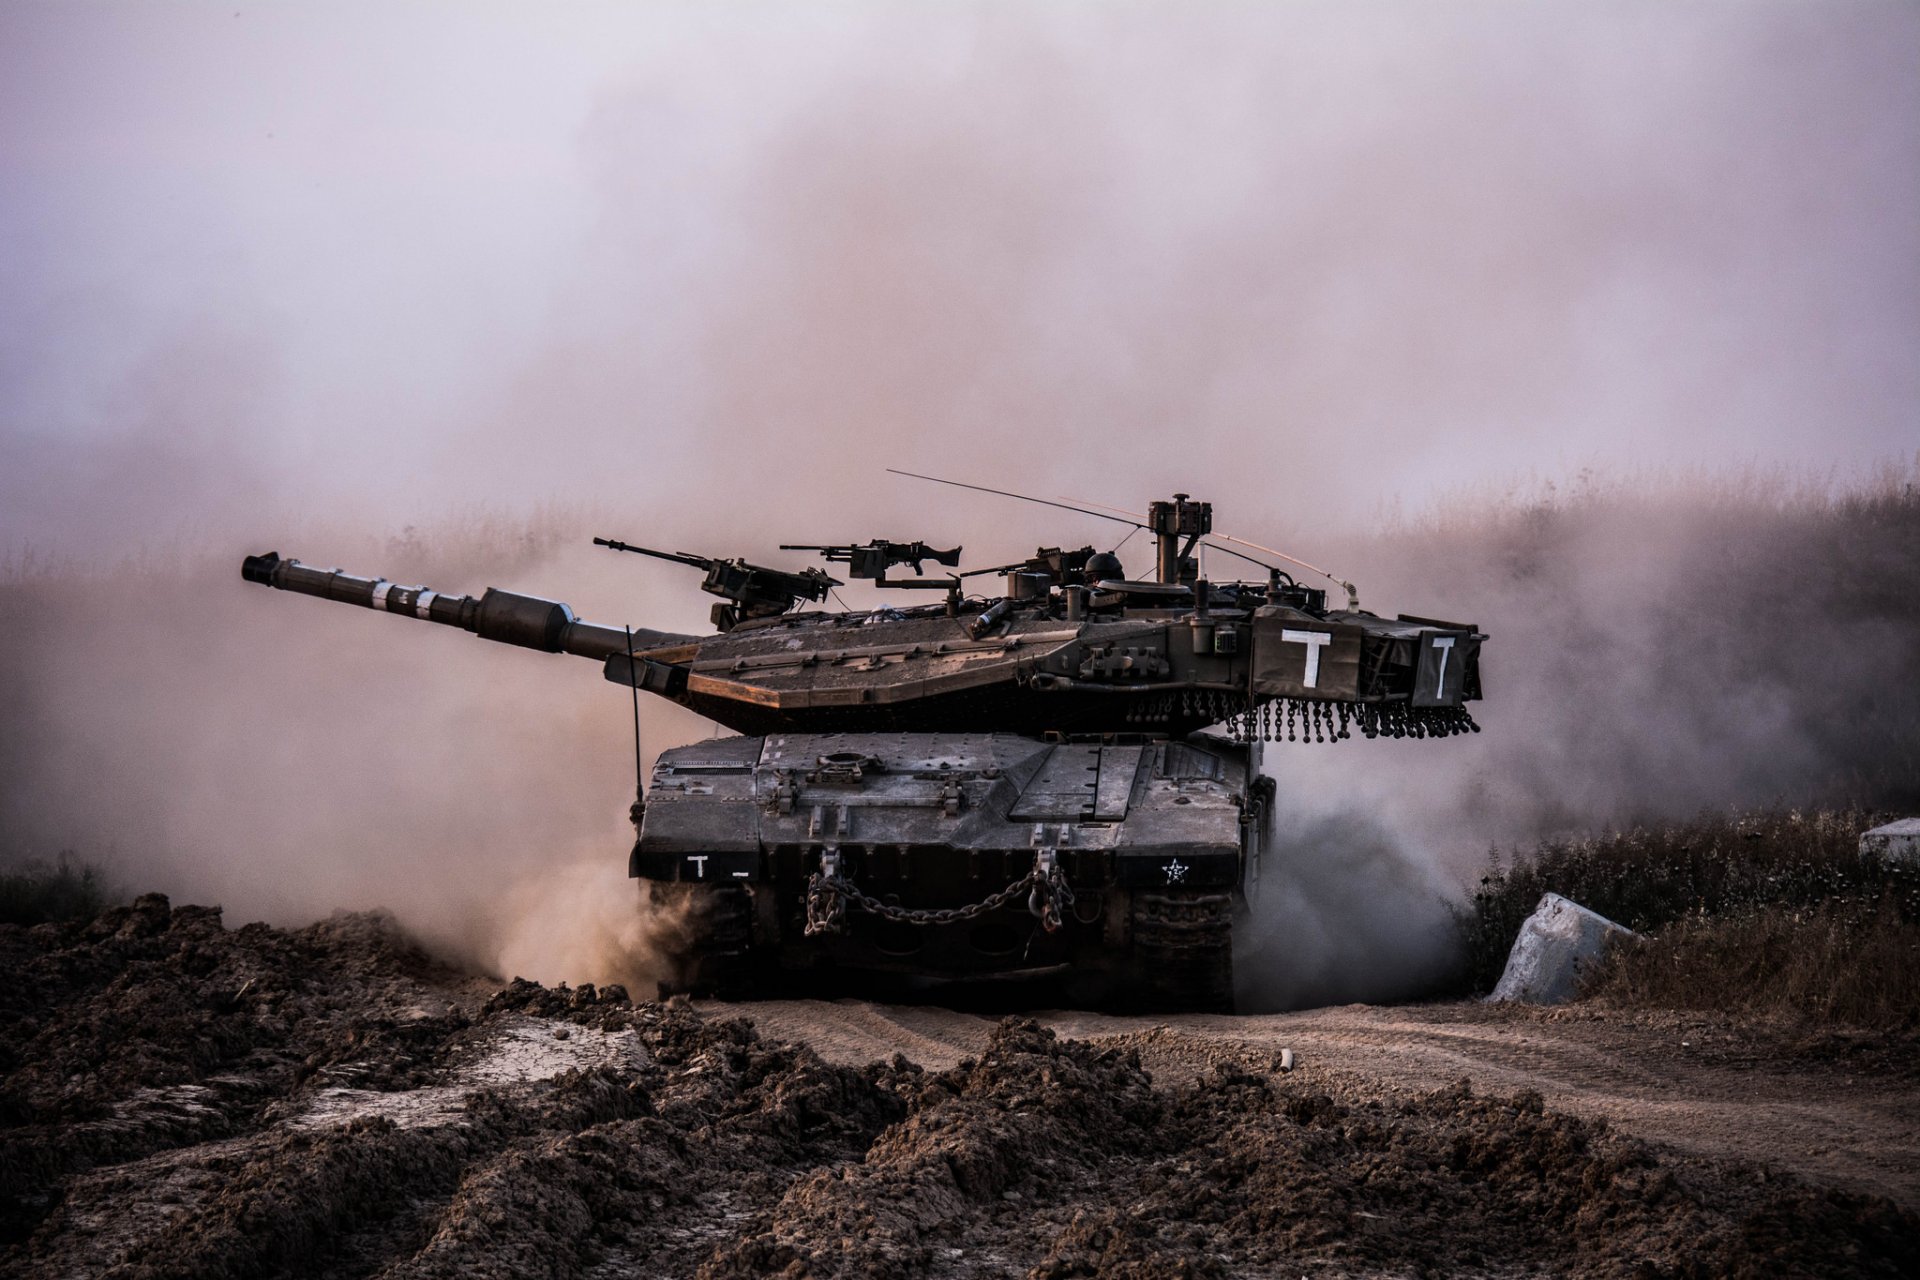 меркава основной боевой танк израиля пыль грязь